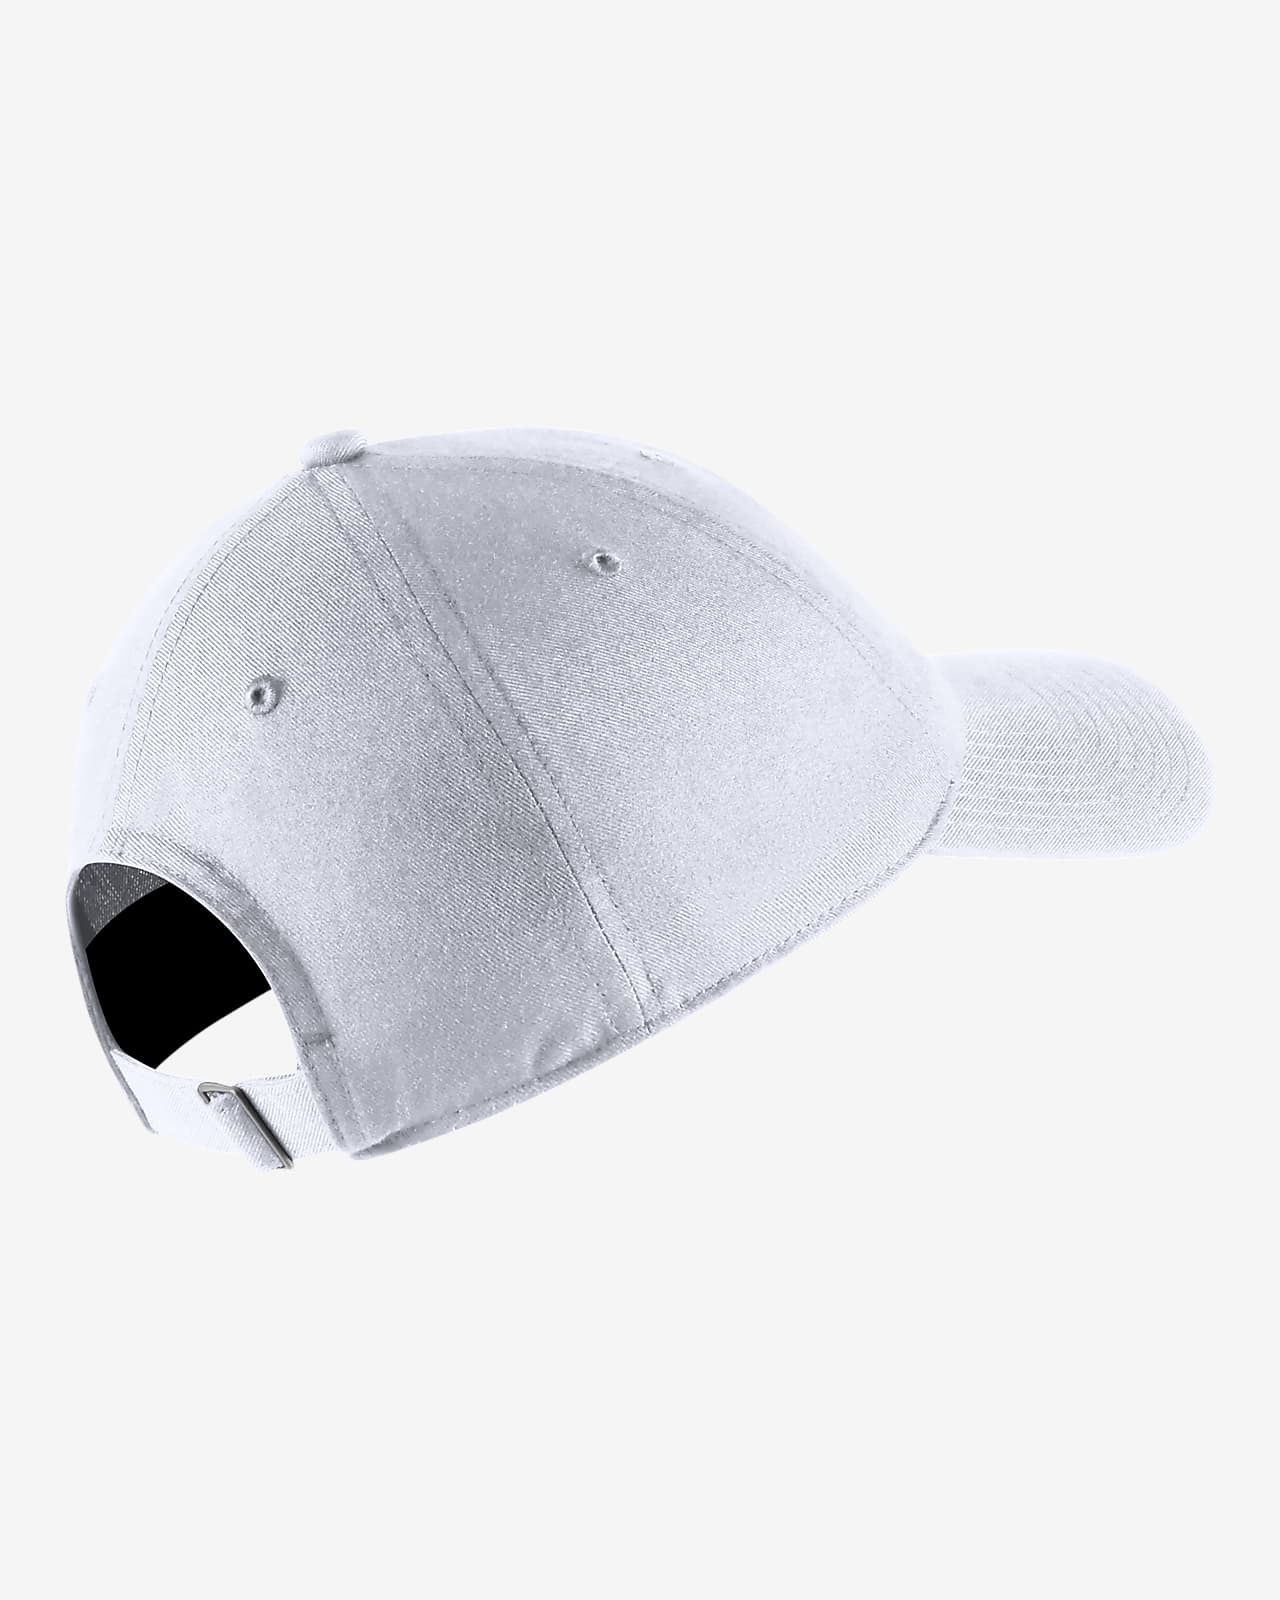 Penn State Nike Aero Fitted Hat  Headwear > HATS > SIZED FLEX FIT